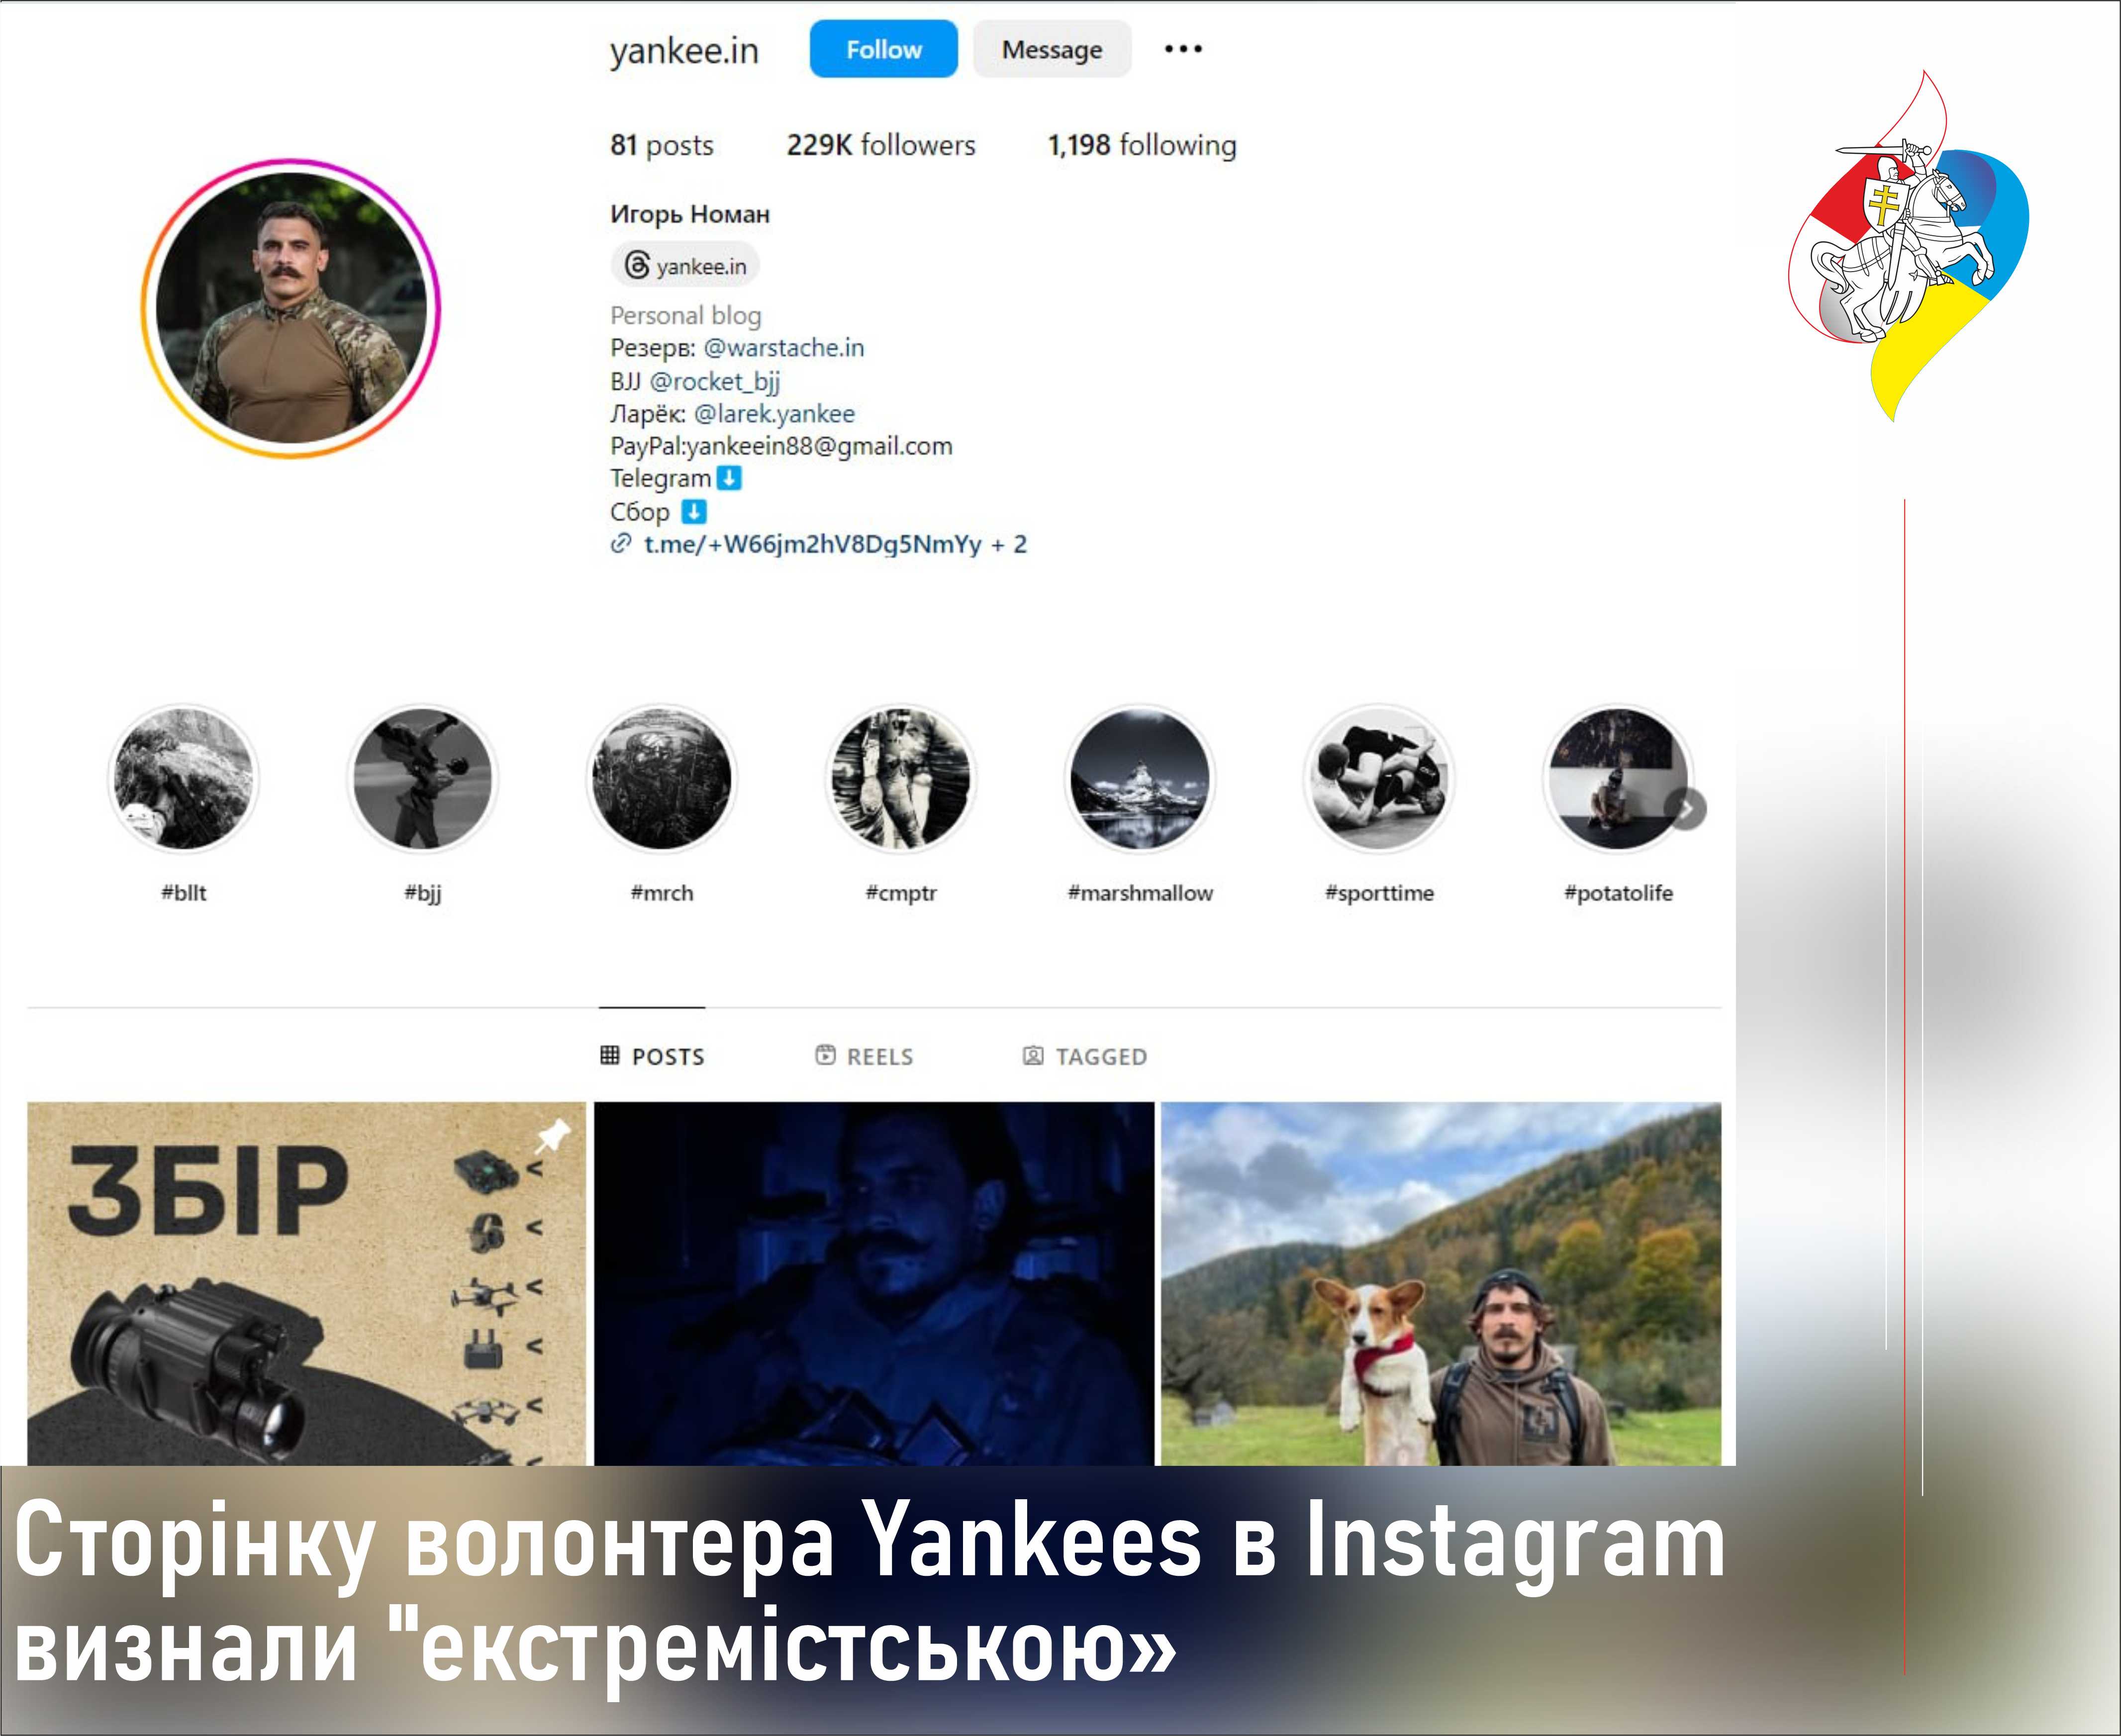   Yankees  Instagram  